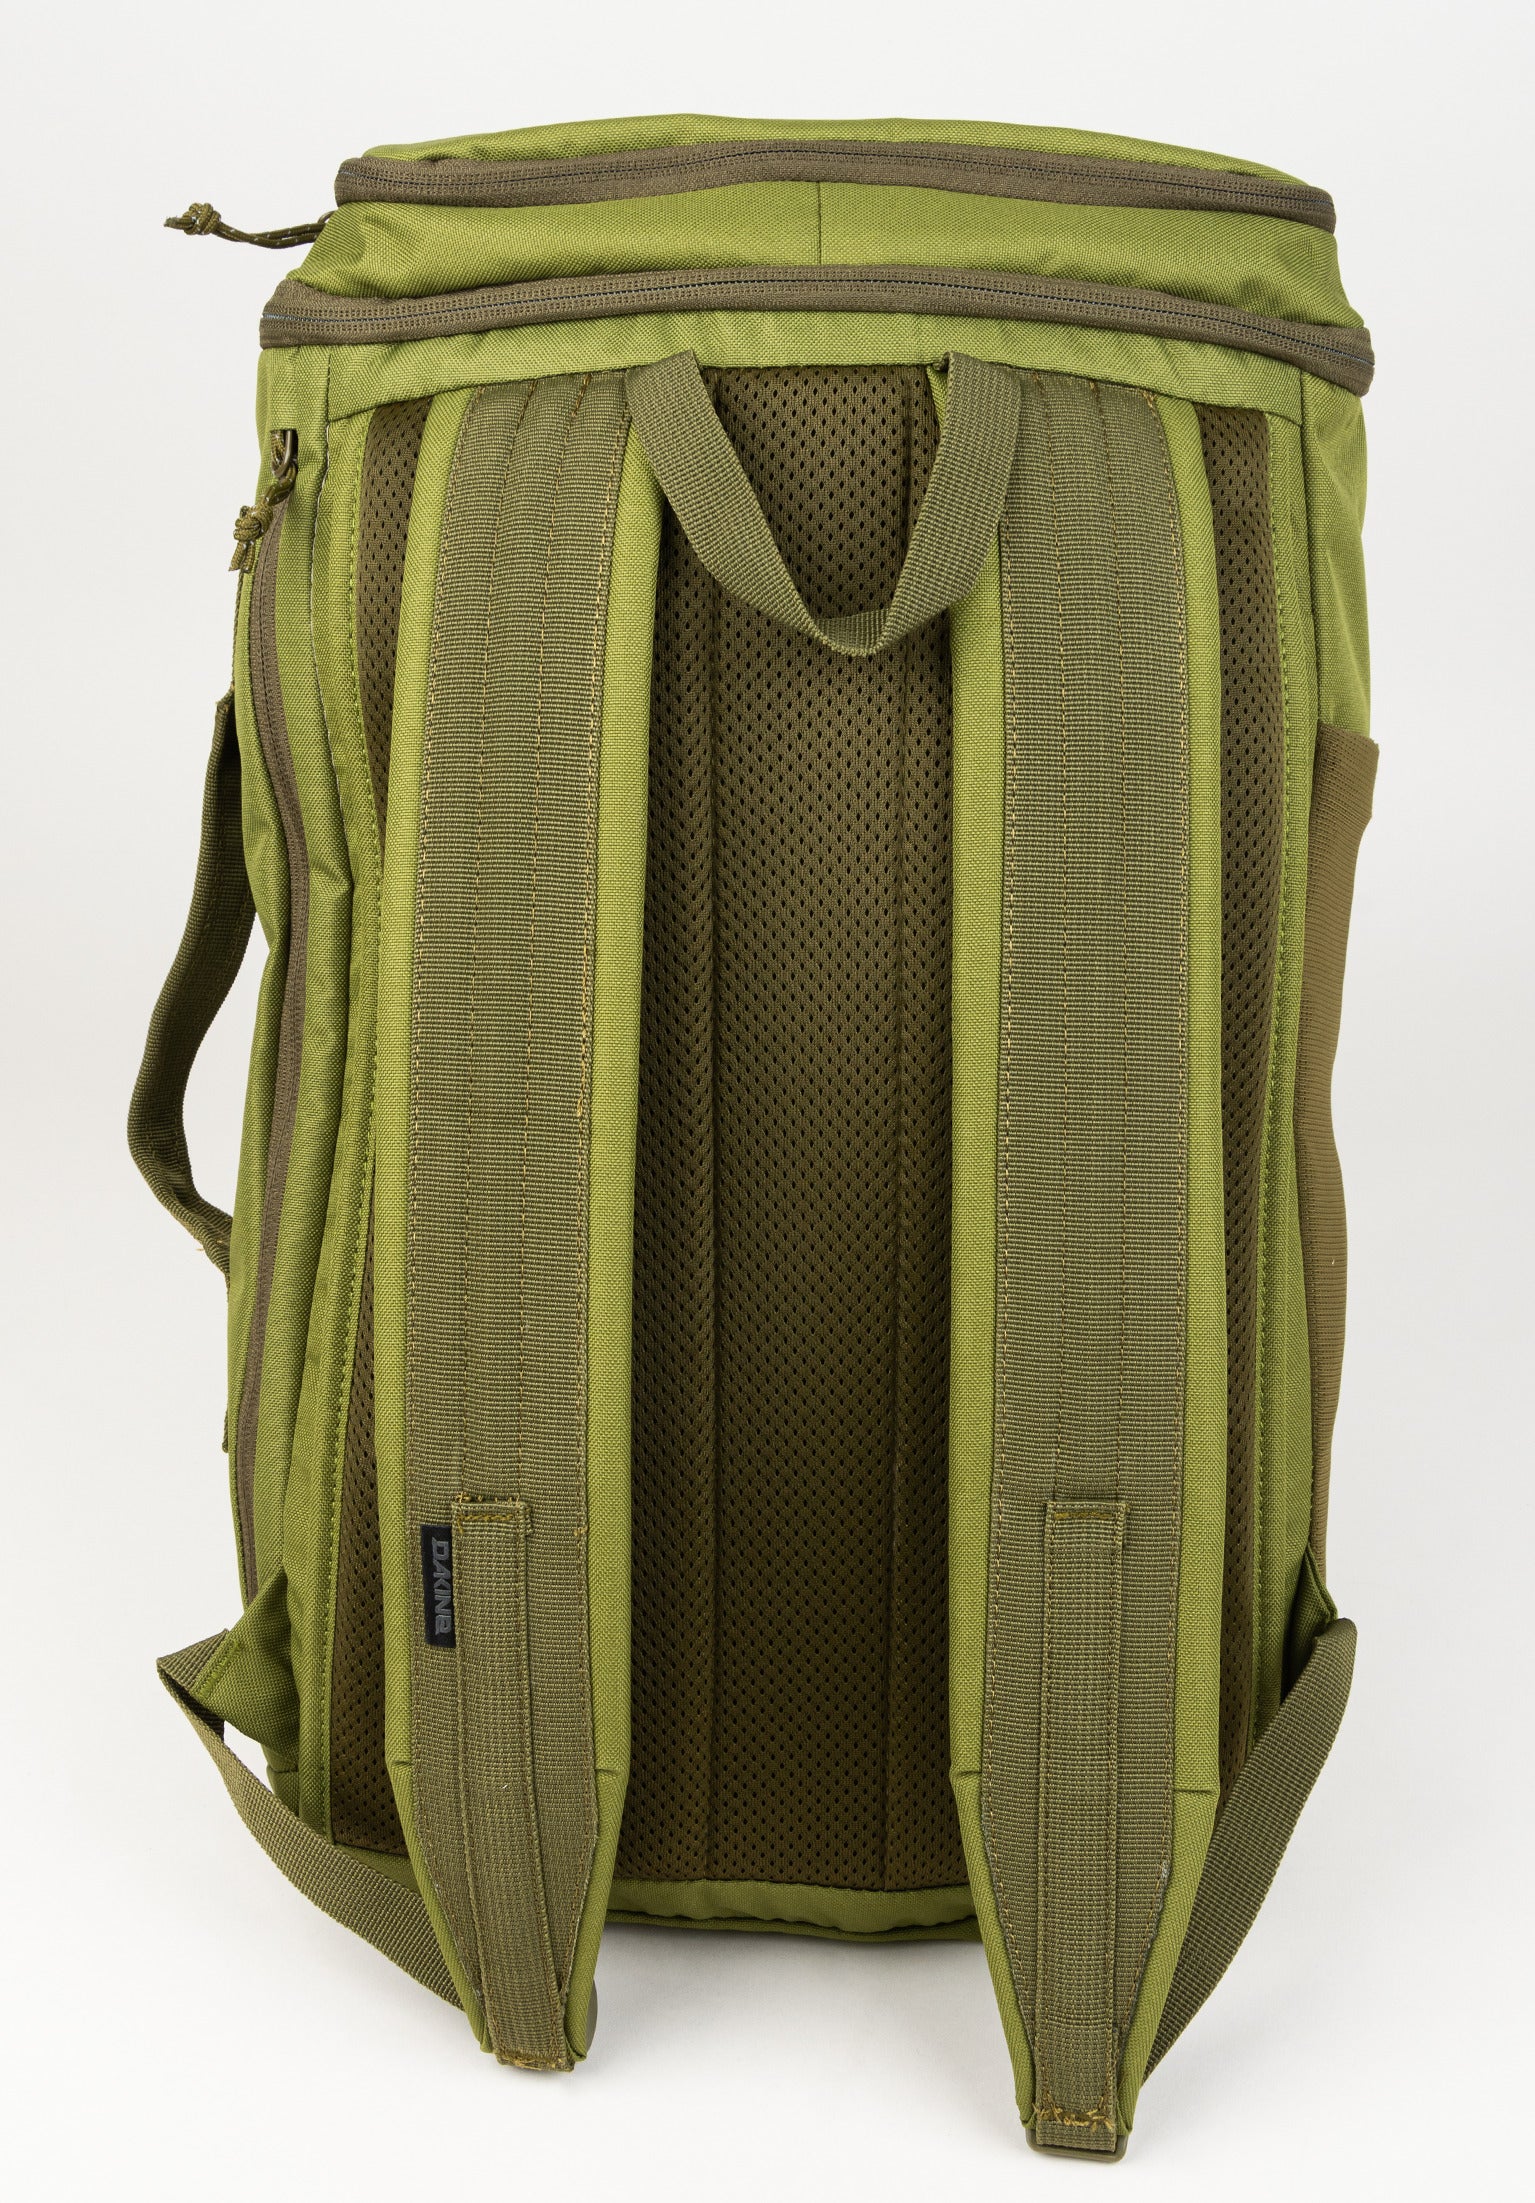 Mission Street Pack 25L DaKine Backpack in utilitygreen for Women